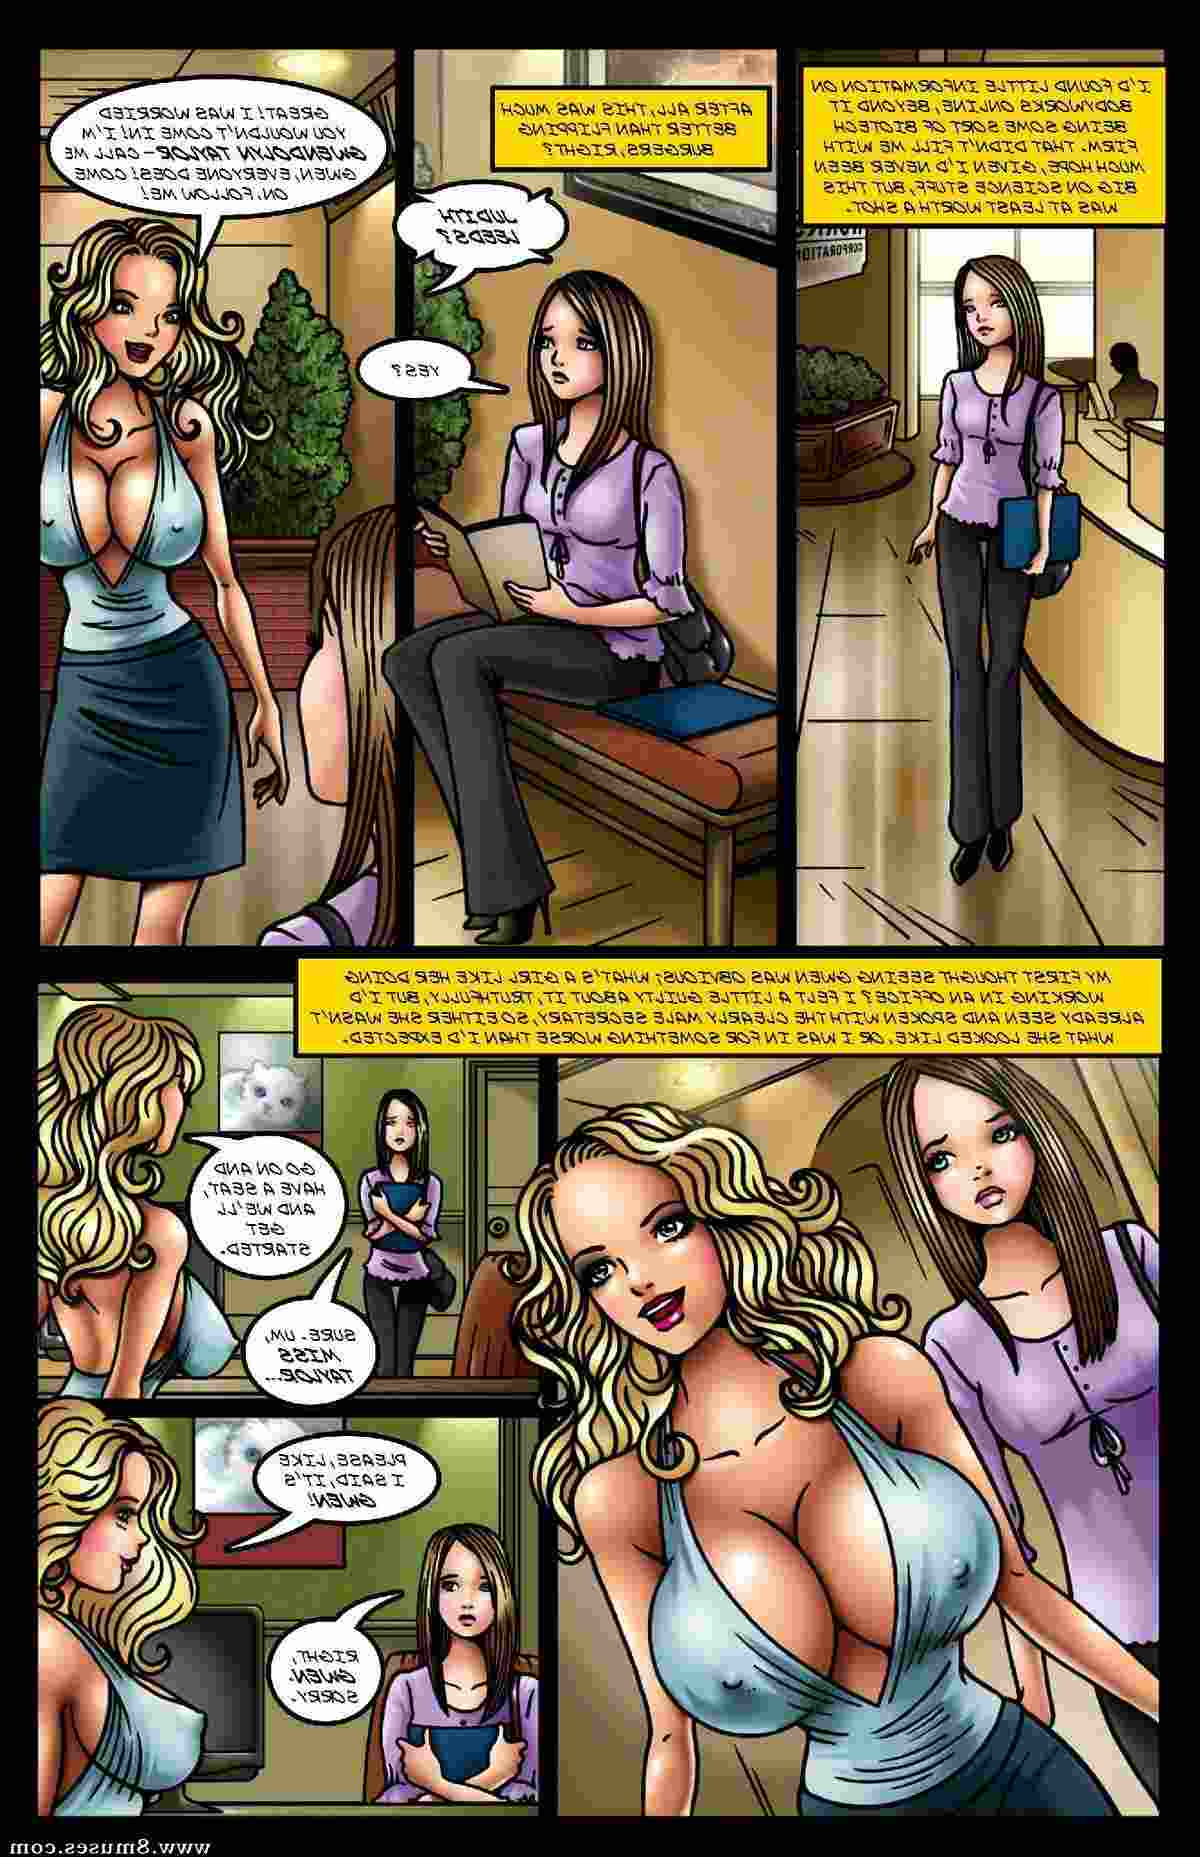 BE-Story-Club-Comics/The-Boob-Job The_Boob_Job__8muses_-_Sex_and_Porn_Comics_6.jpg